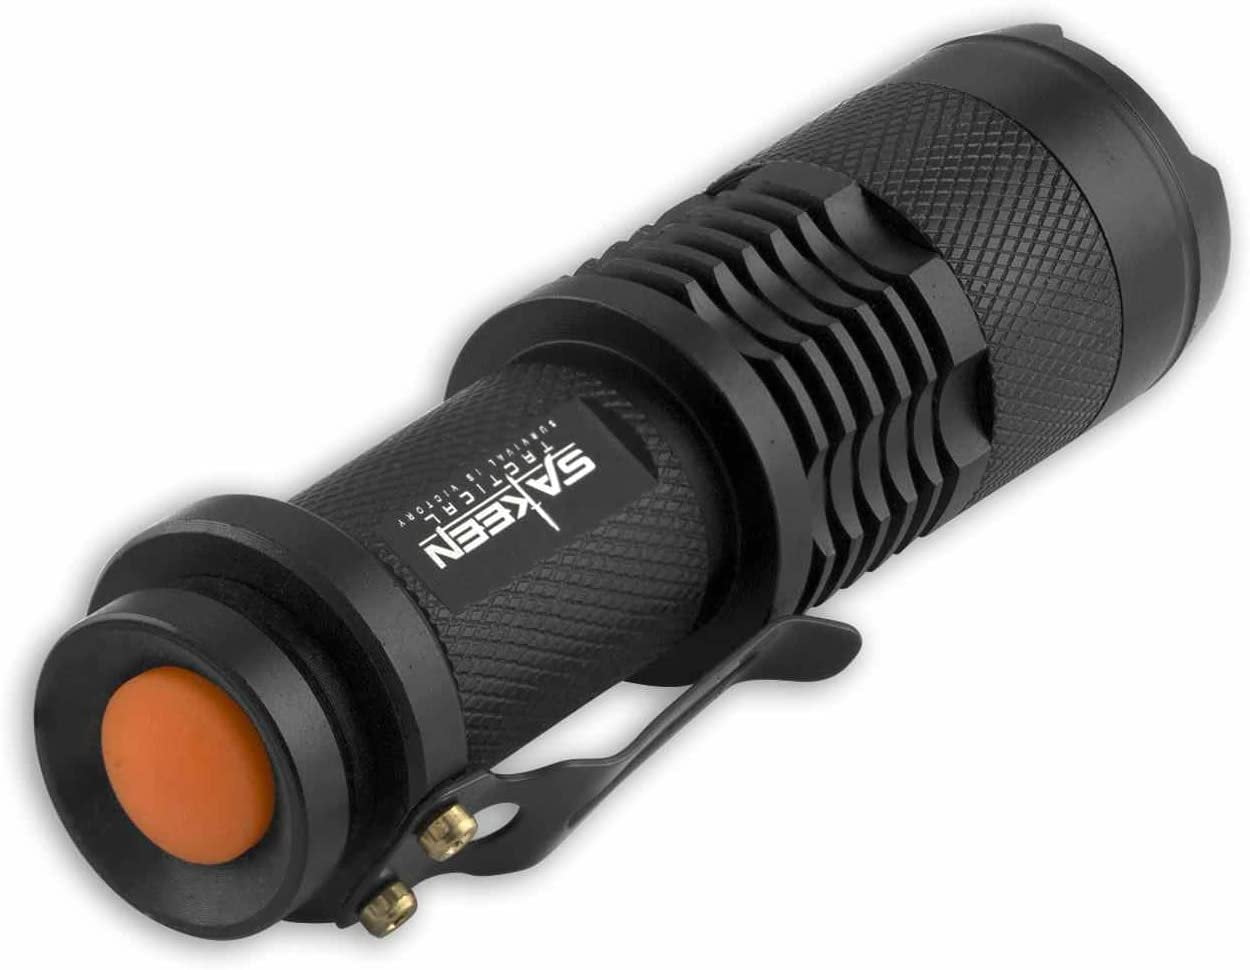 Flashlight Small Ultra Bright Led – Badger Survival